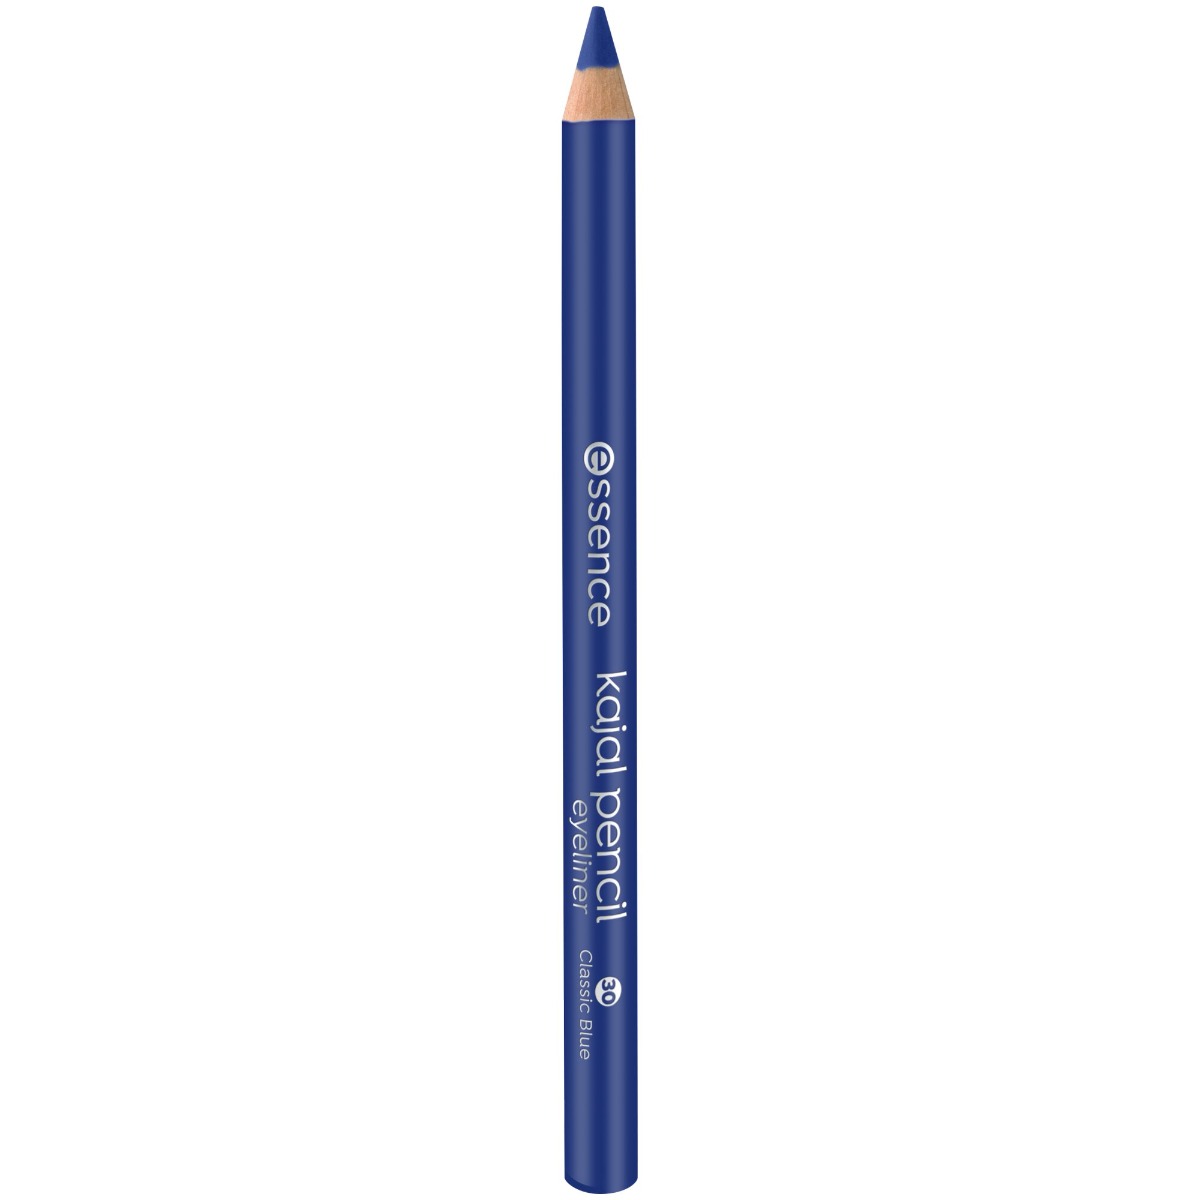 Creion pentru ochi Kajal 30 - Classic Blue, 1g, Essence